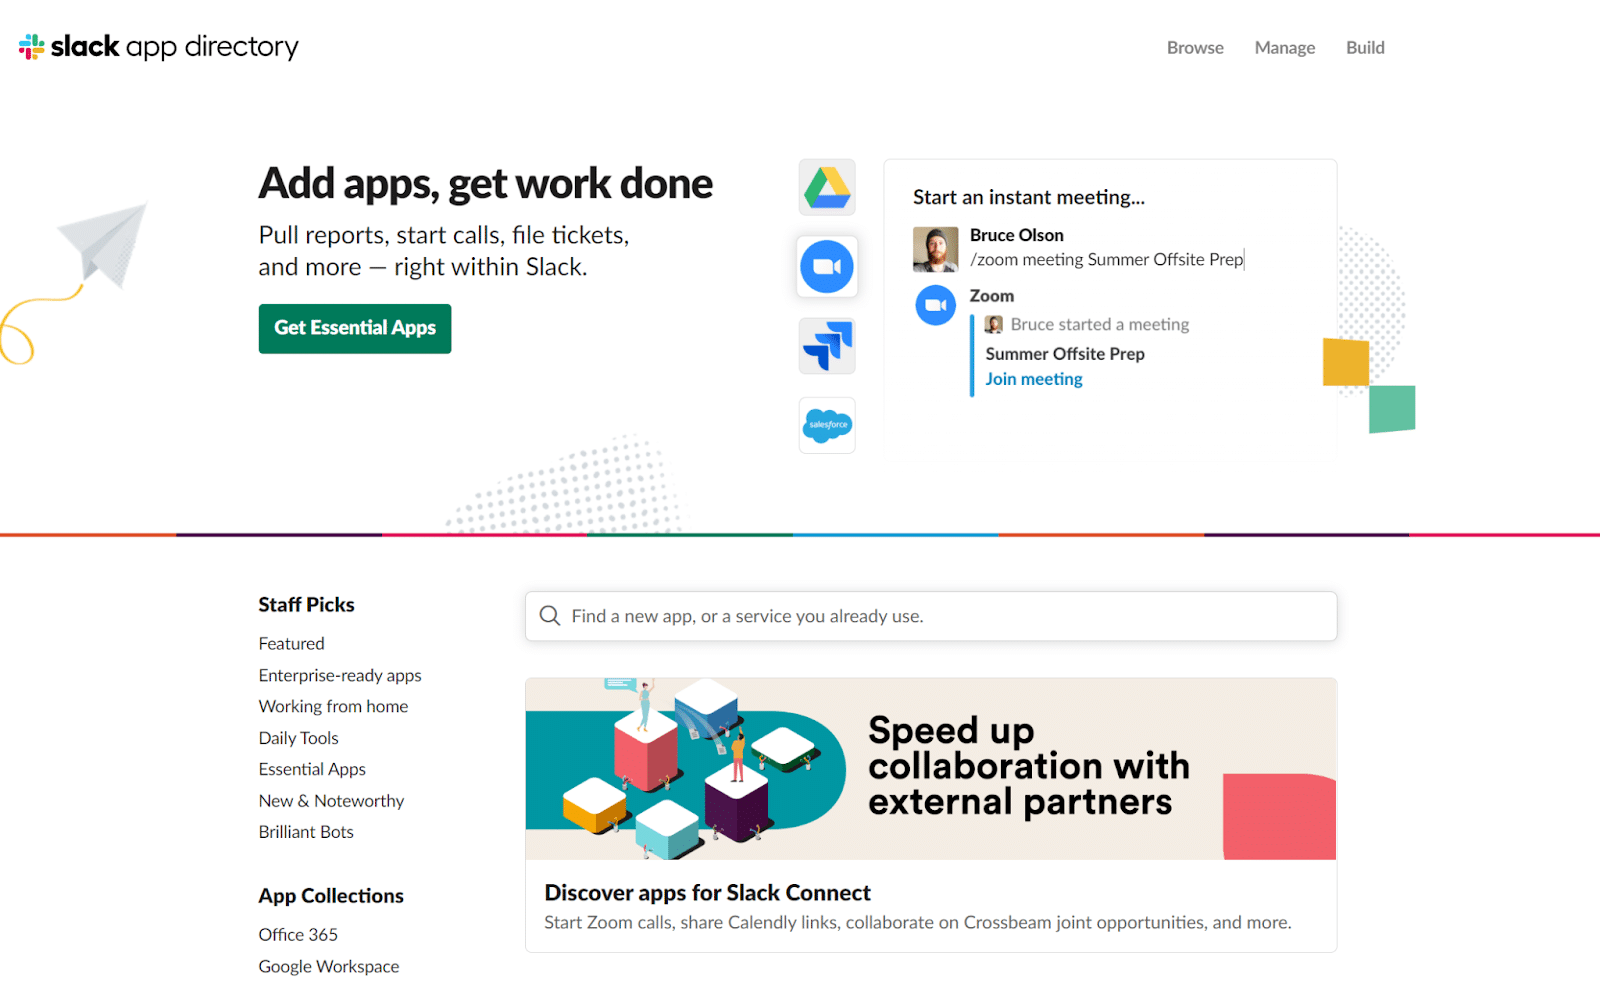 La schermata di presentazione delle app di Slack